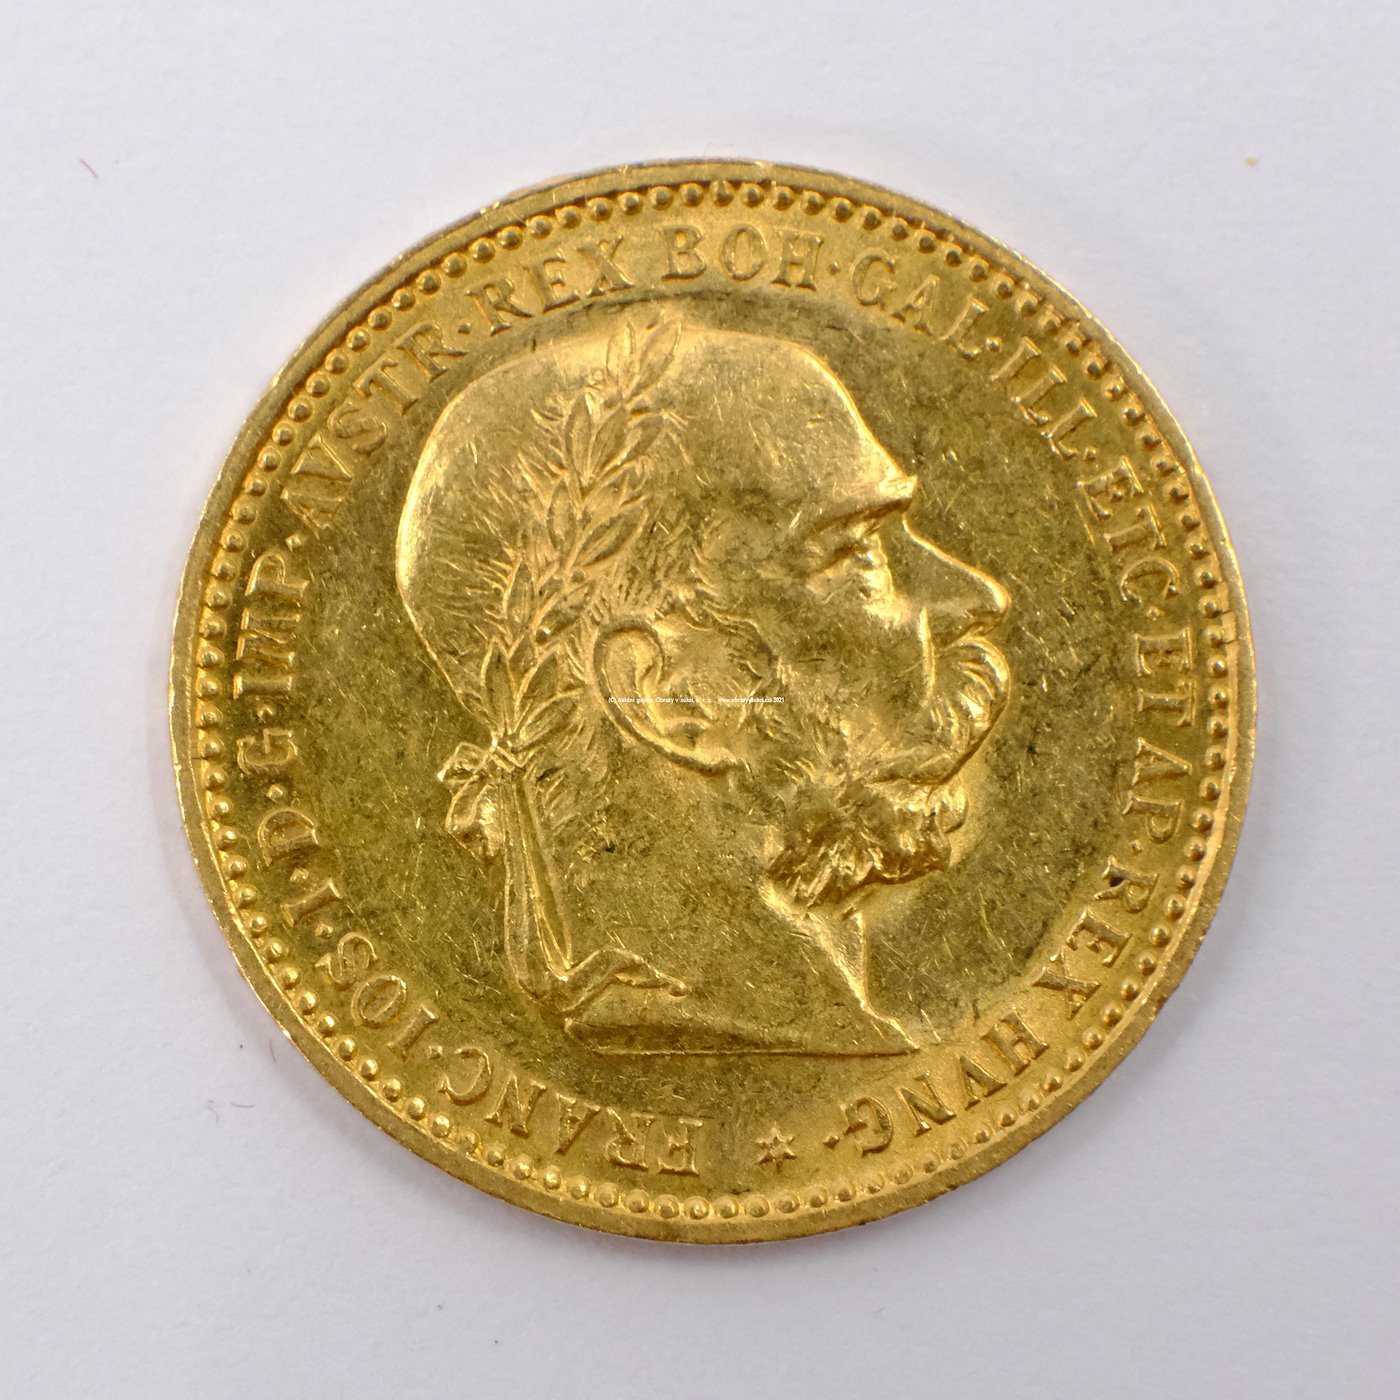 .. - Rakousko Uhersko zlatá 10 Koruna 1897 rakouská. Zlato 900/1000, hrubá hmotnost mince 3,387g